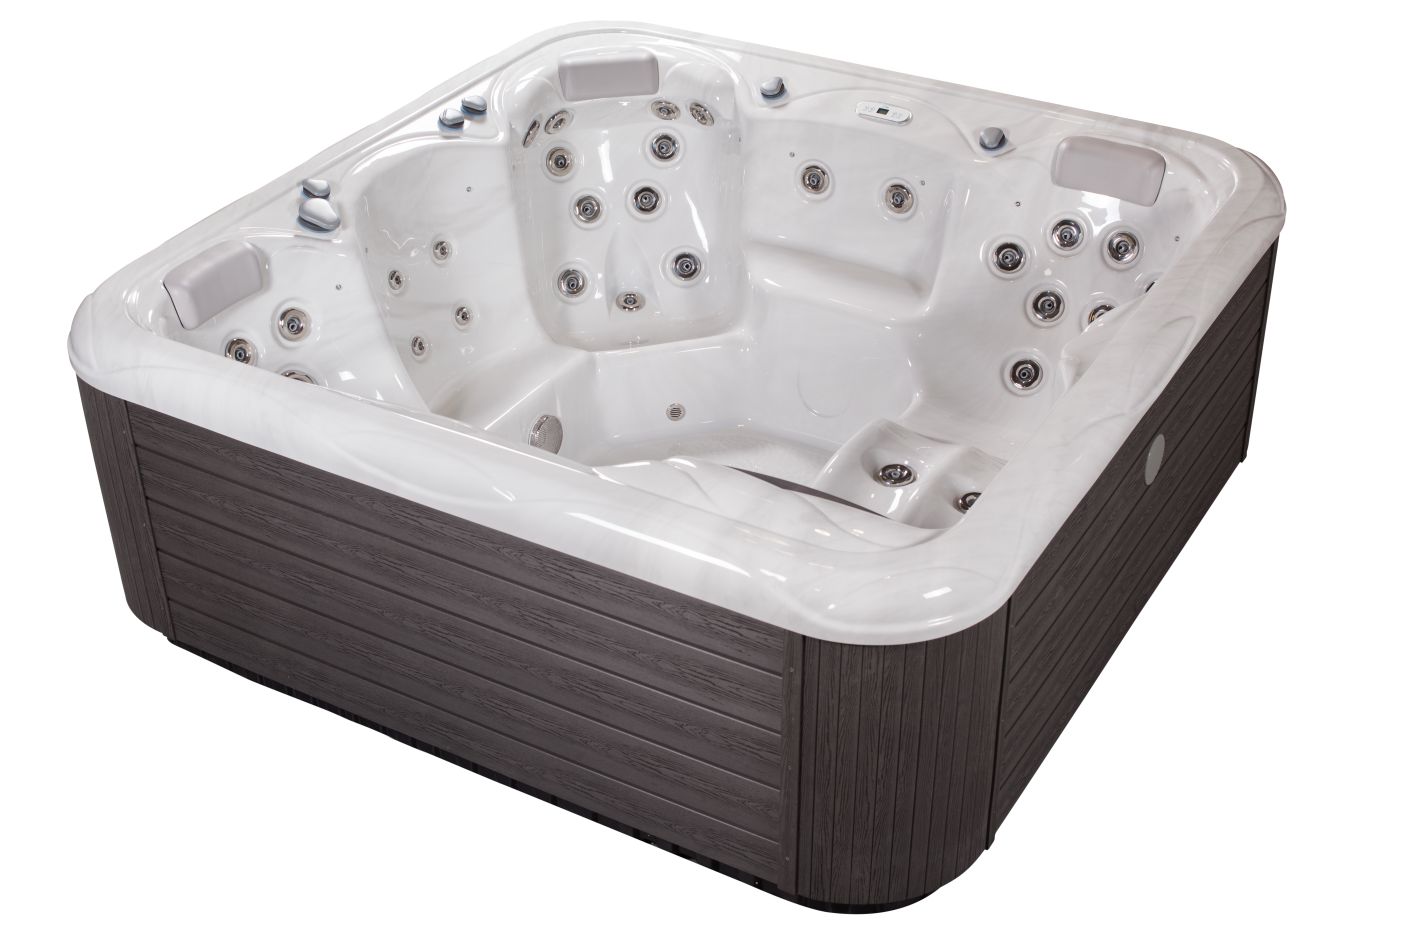 Large hot tub